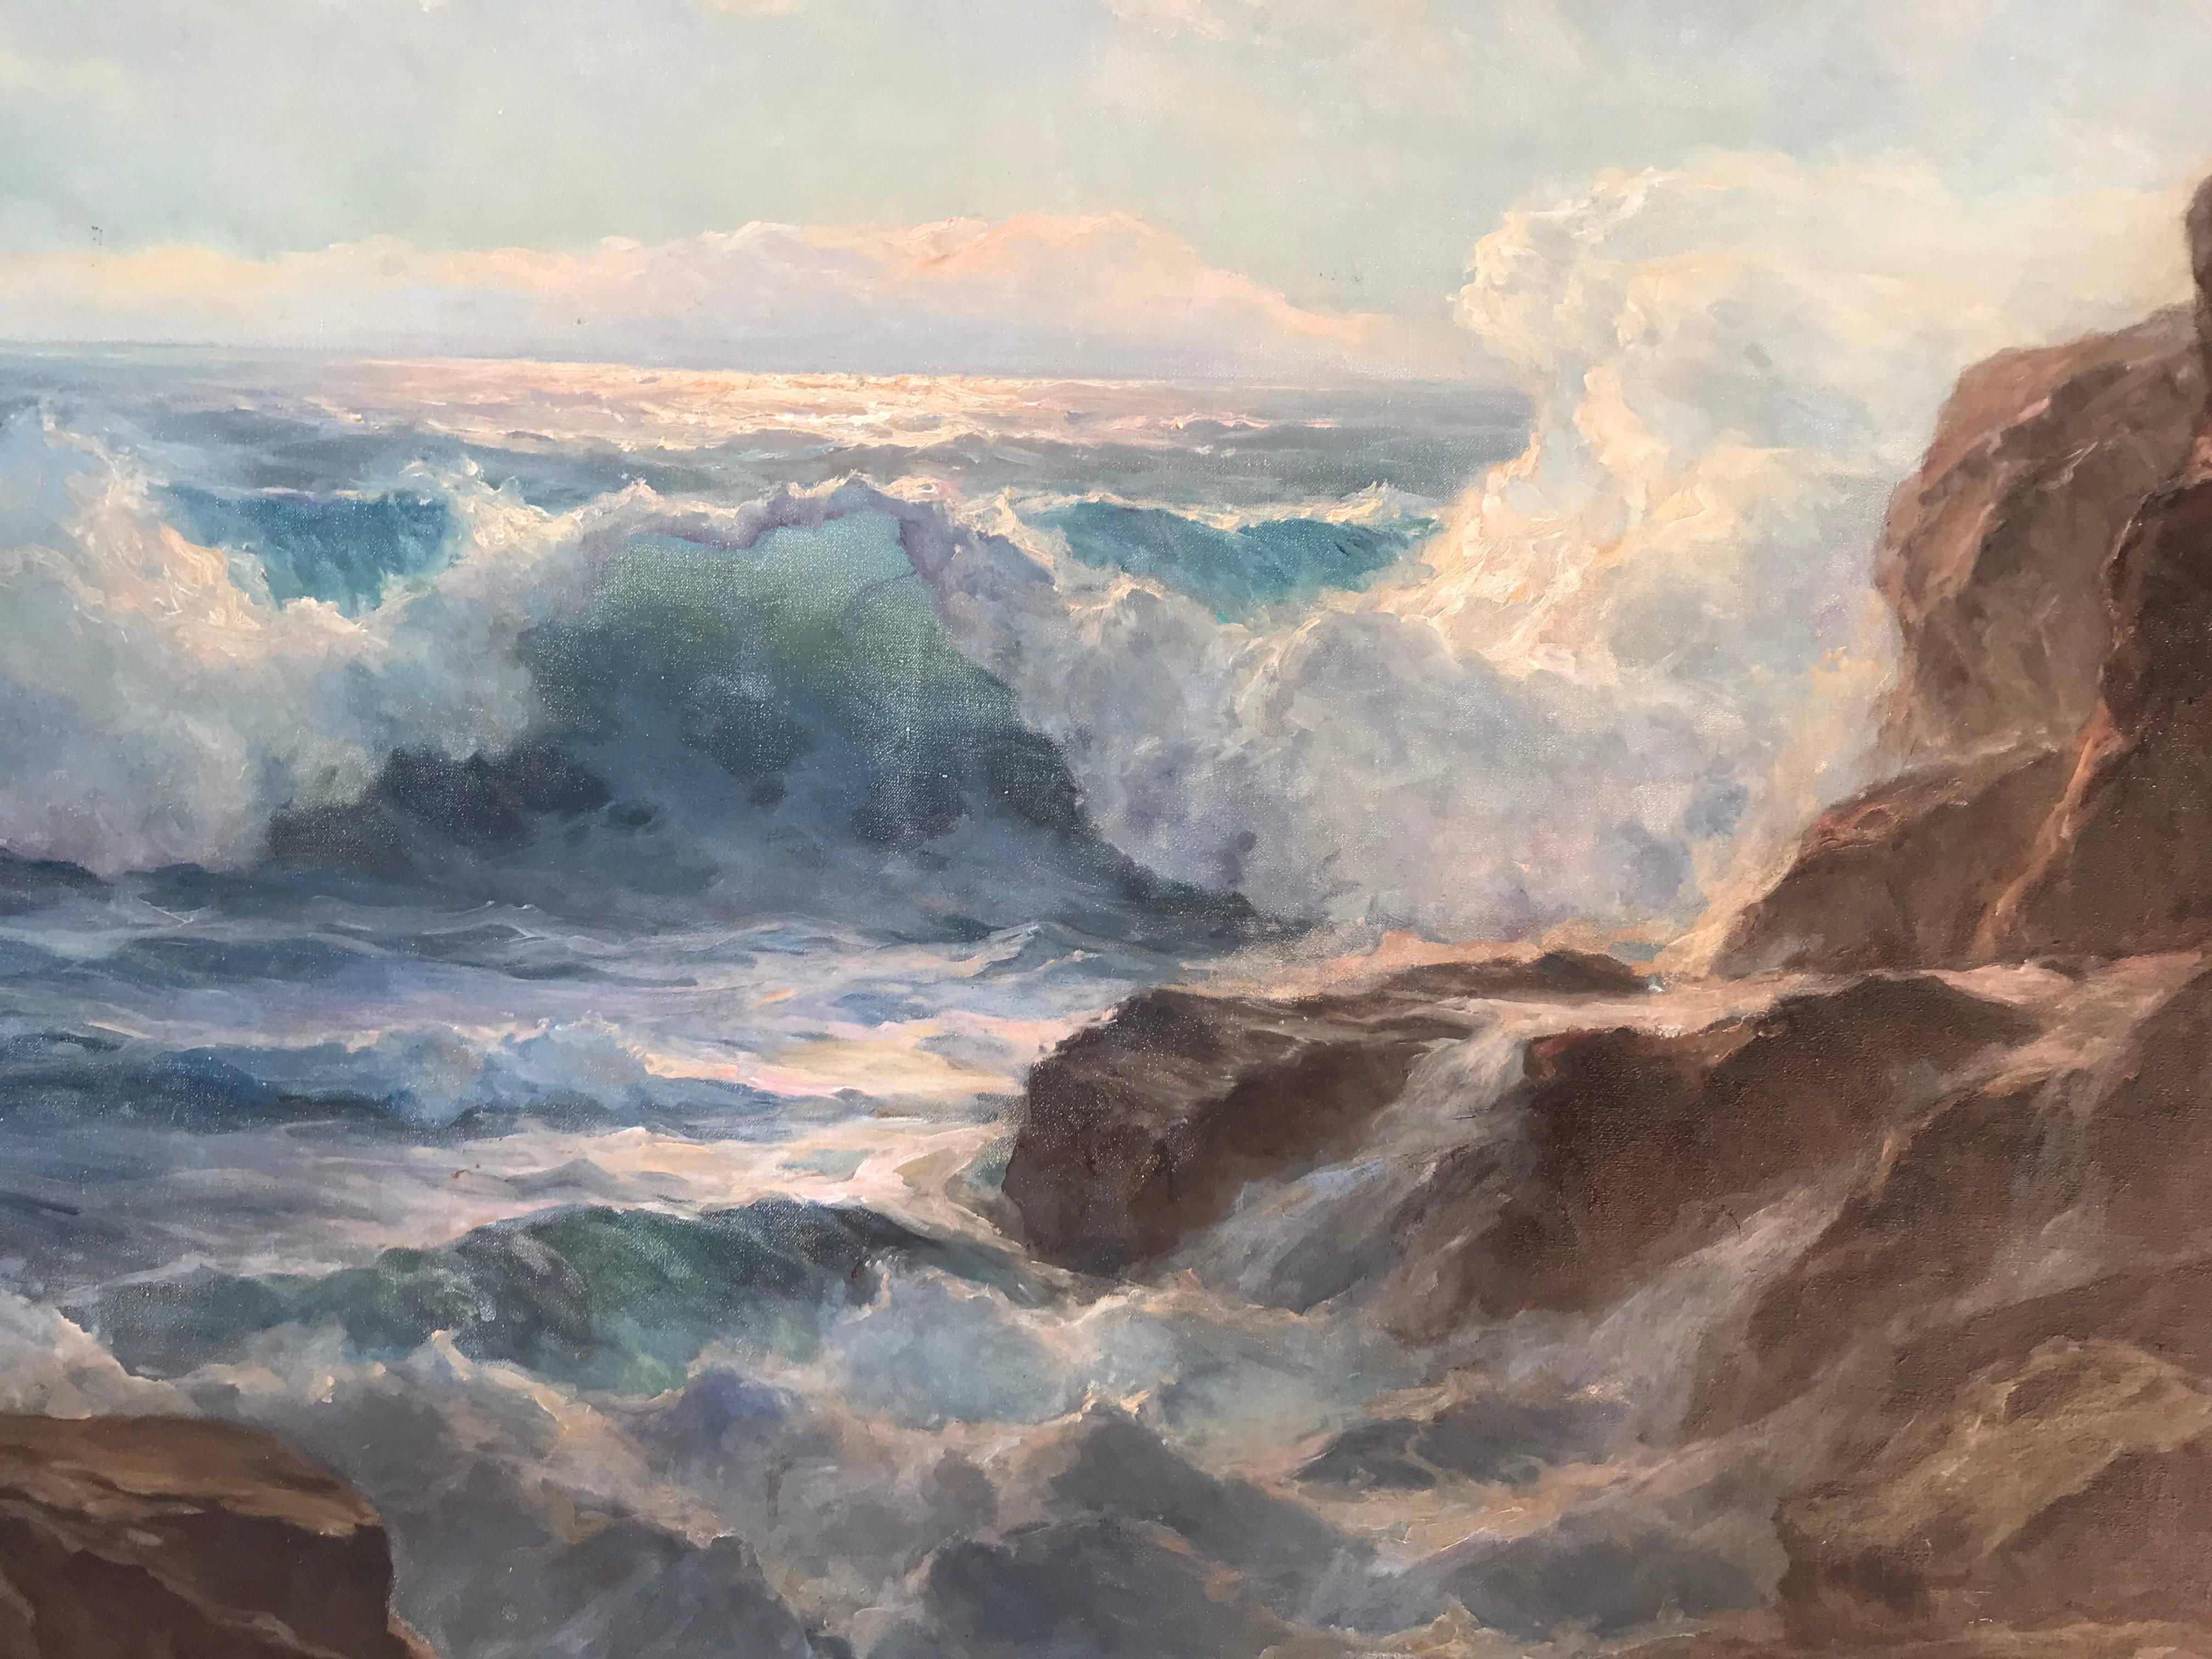 William Columbus Ehrig Landscape Painting - "Crashing Surf”